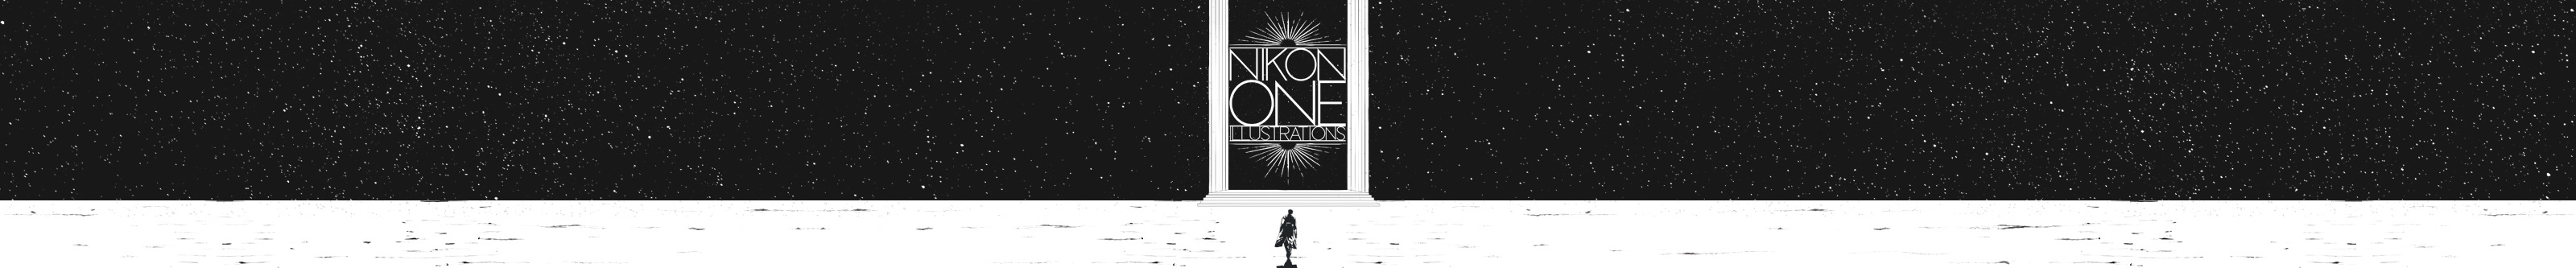 NikonOne .'s profile banner